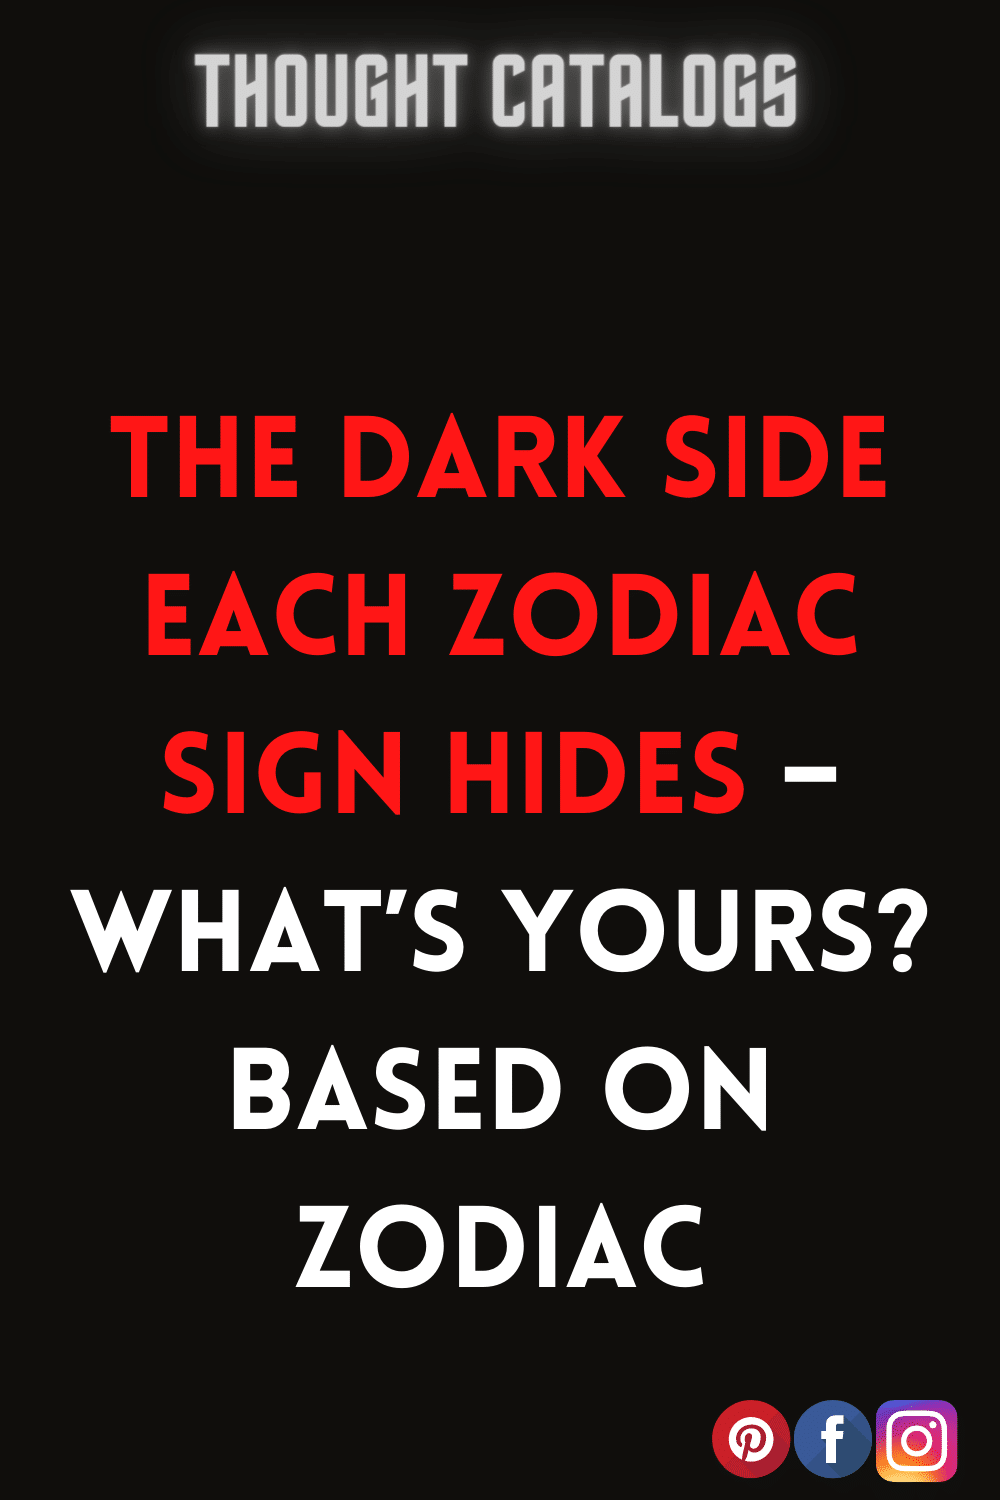 #Astrology2022 #horoscope2022 #ZodiacSigns2022 #zodiac #astrology #zodiacsigns #horoscope #capricorn #virgo #aries #leo #scorpio #pisces #libra #cancer #taurus #aquarius #gemini #zodiacmemes #sagittarius #horoscopes #love #zodiacsign #zodiacposts #astrologymemes #zodiacfacts #astrologyposts #tarot #zodiacs #art #zodiaco #zodiacpost #bhfyp#astrologer #astro #astrologysigns #zodiaclove